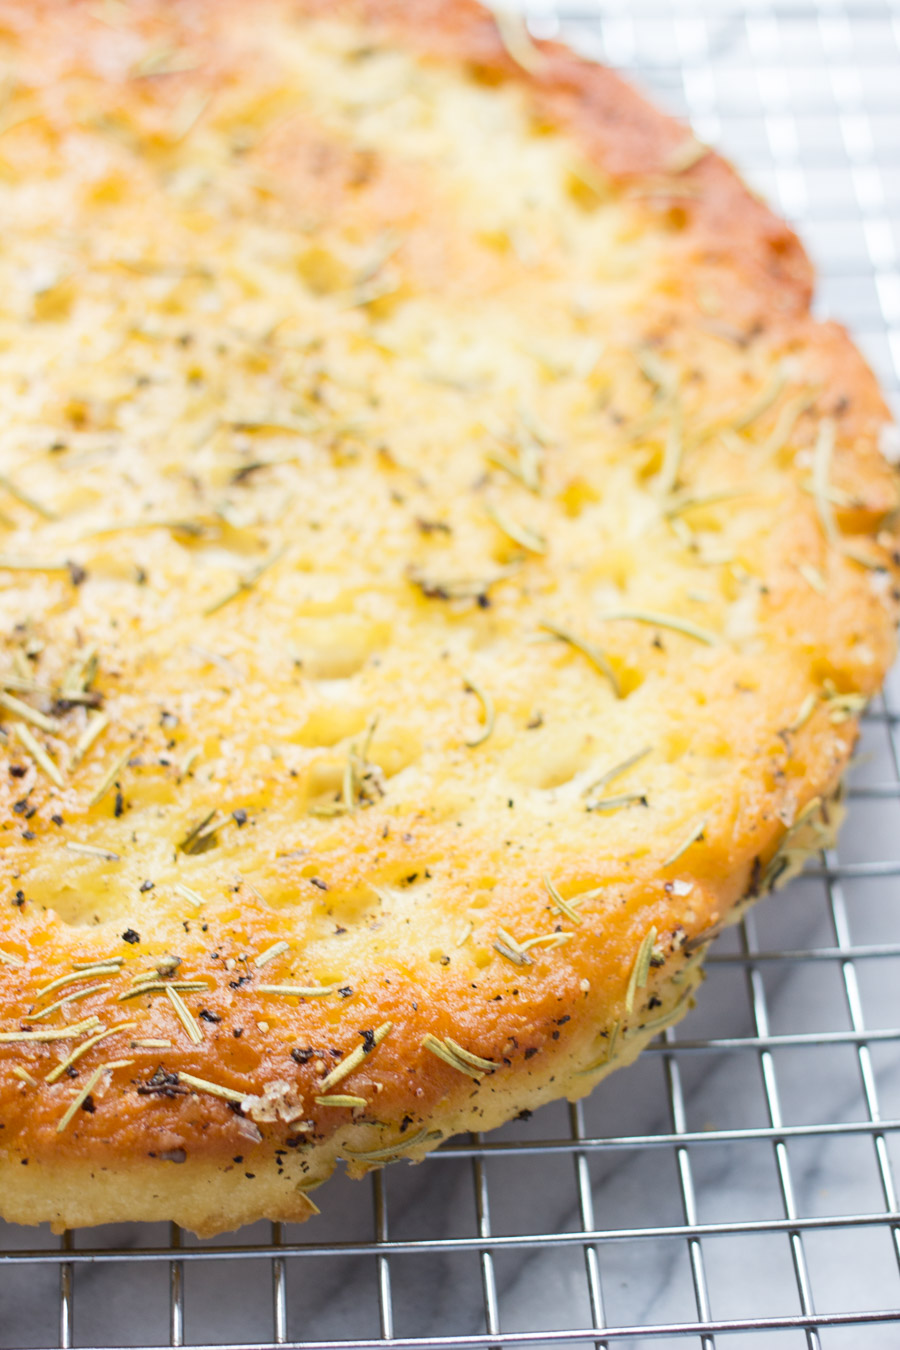 How to make gluten-free focaccia bread via @kingarthurflour